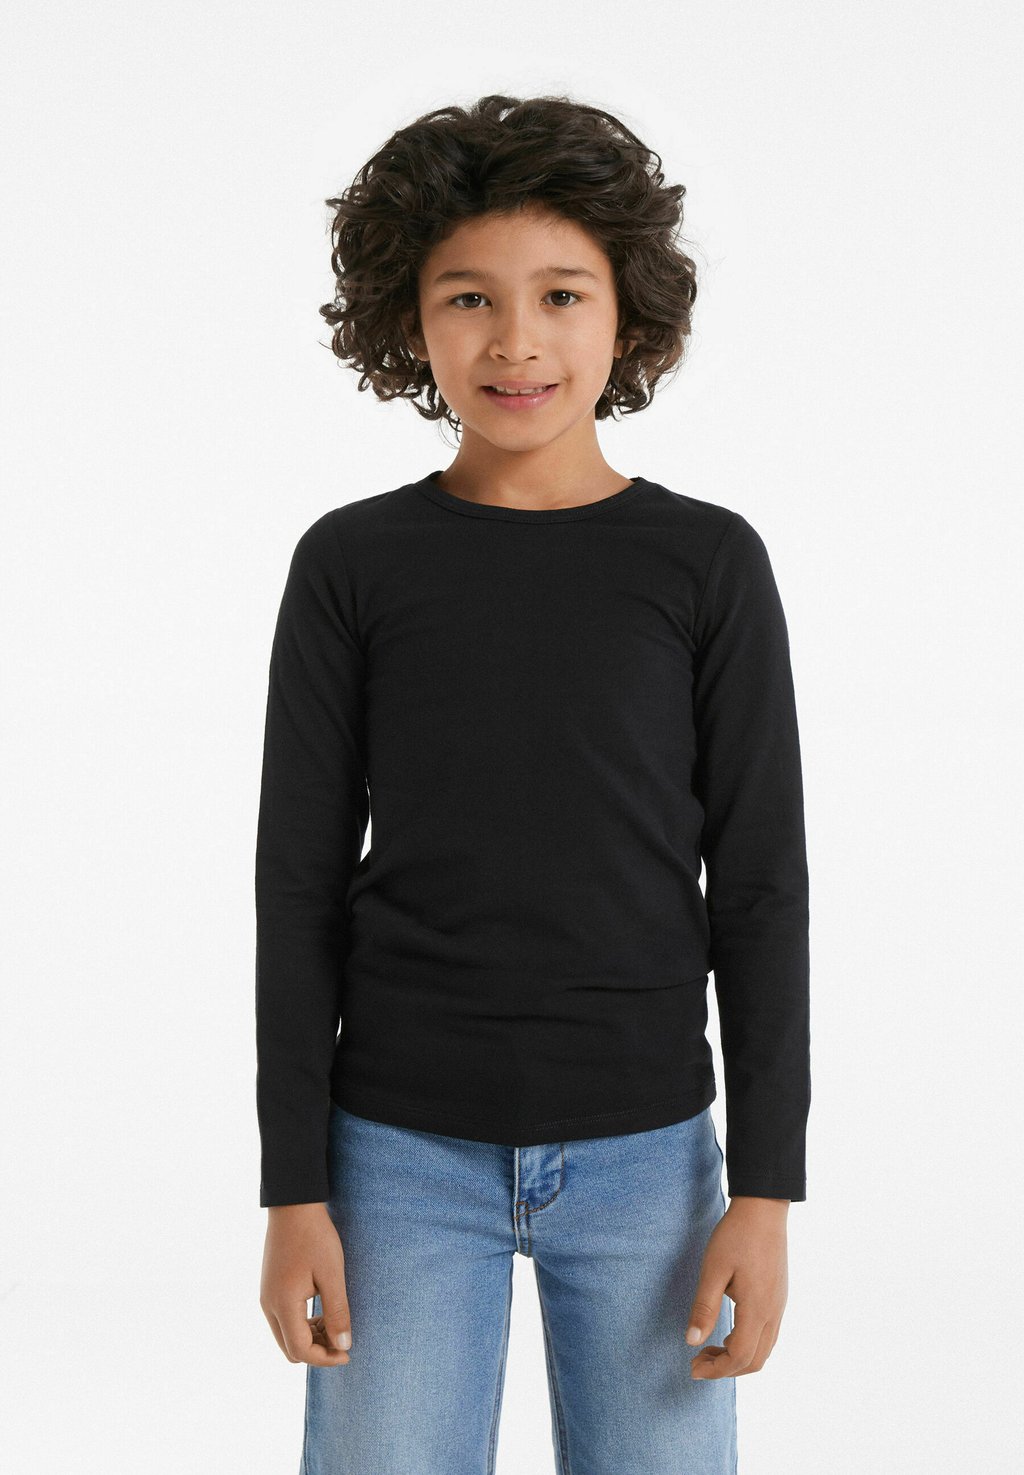 Рубашка с длинным рукавом THERMO Tezenis, цвет schwarz black